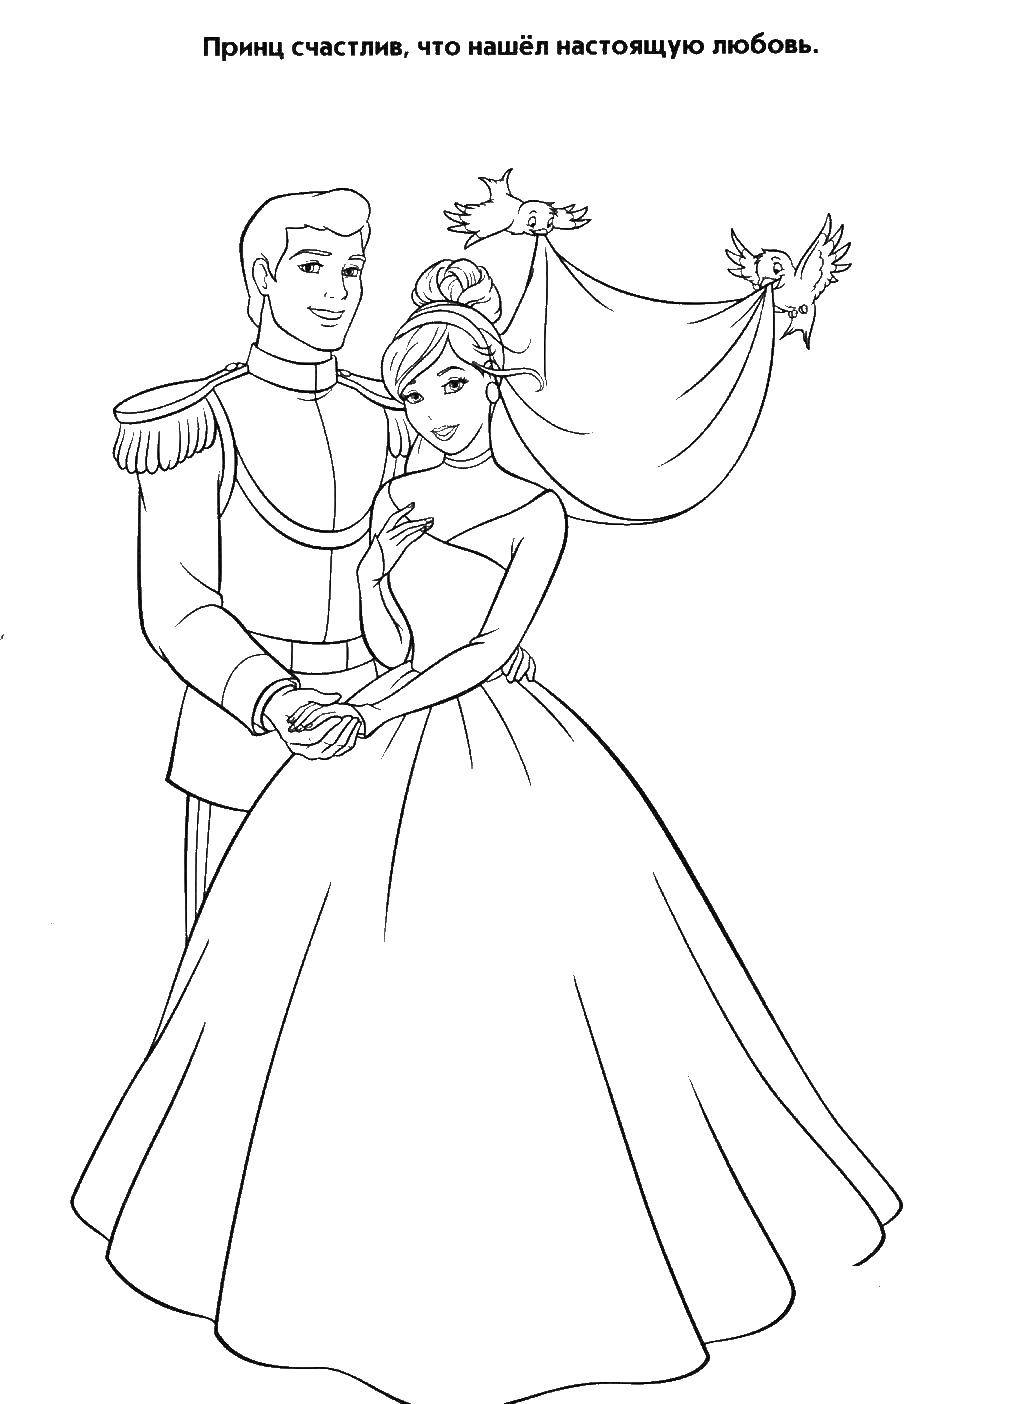 Coloring Wedding Prince and Cinderella. Category Cinderella. Tags:  Cinderella, Prince.